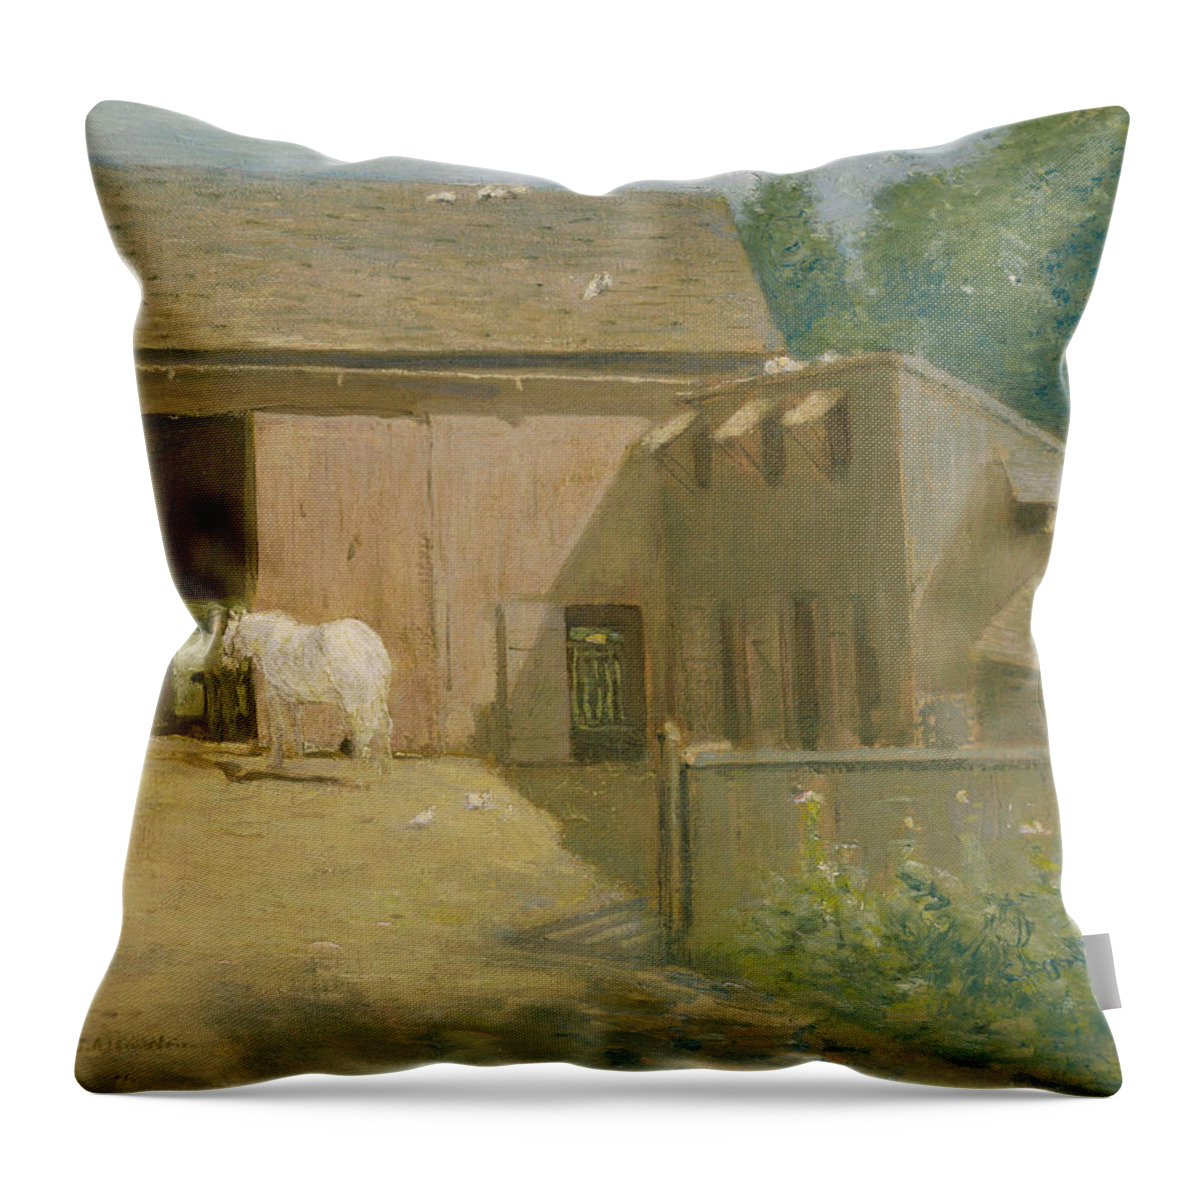 Julian Alden Weir Throw Pillow featuring the painting New England Barnyard by Julian Alden Weir